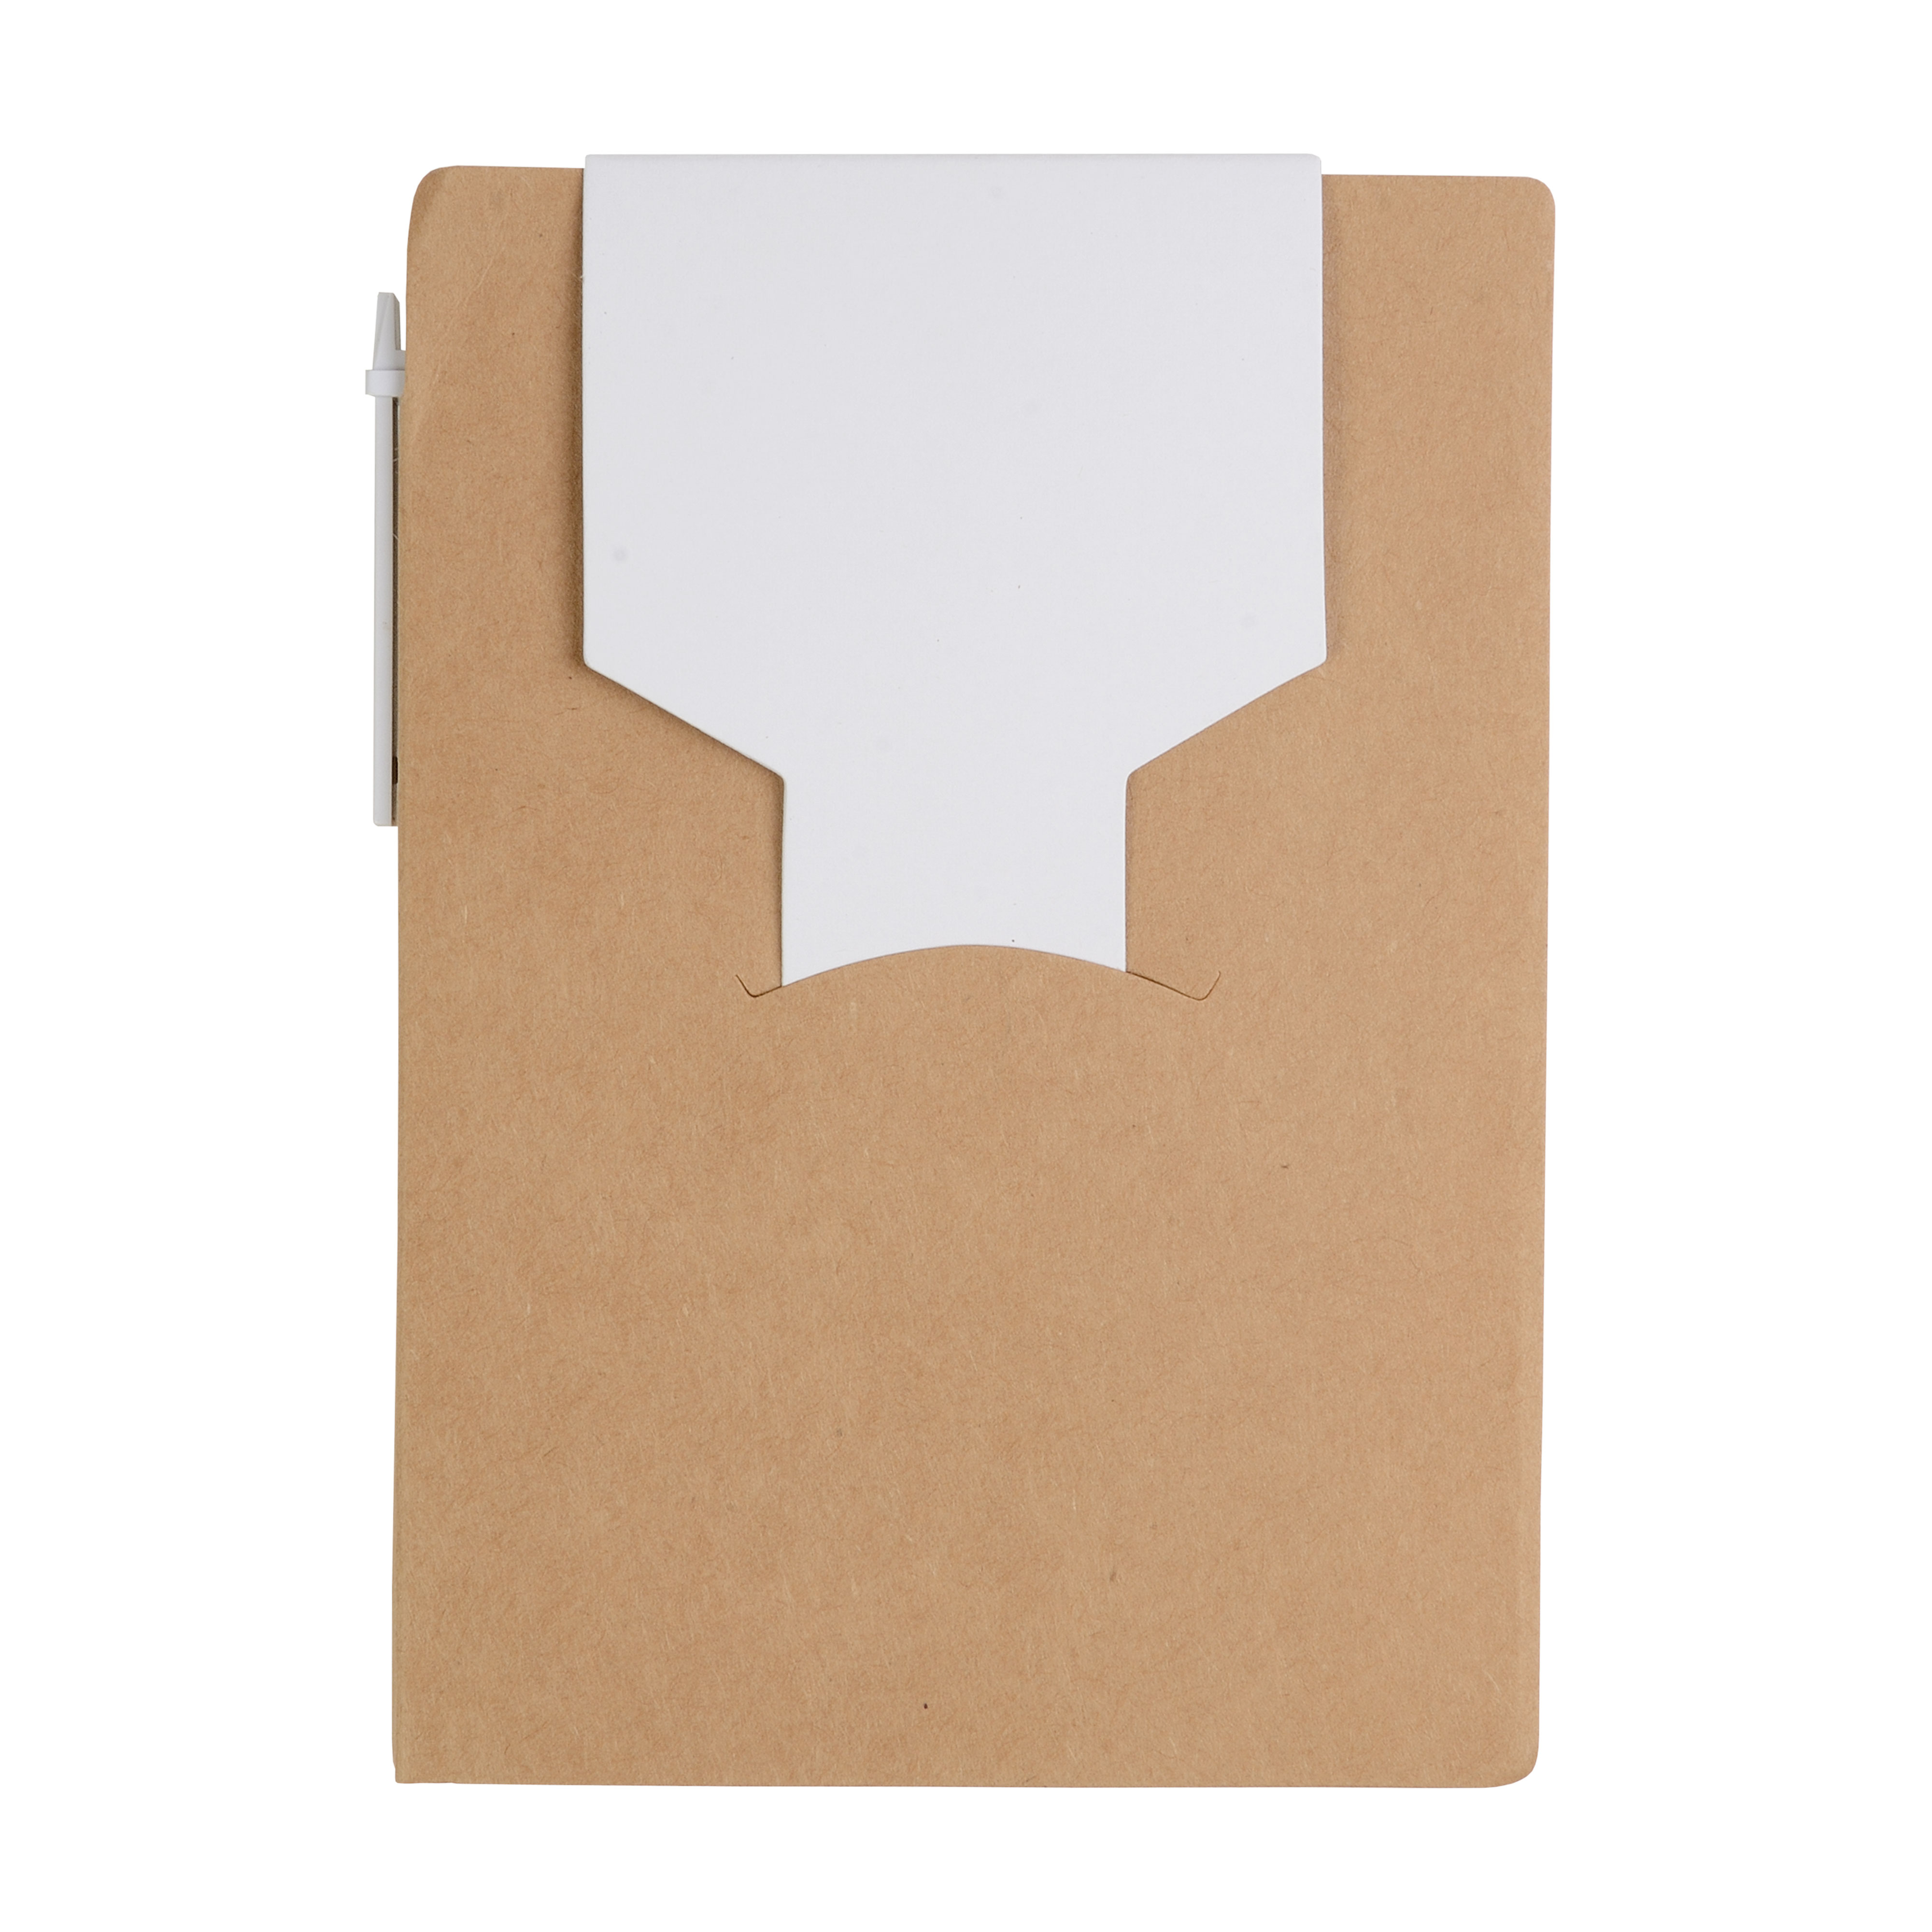 Personalizza il Tuo Block Notes Riciclato con Penna e Foglietti Adesivi